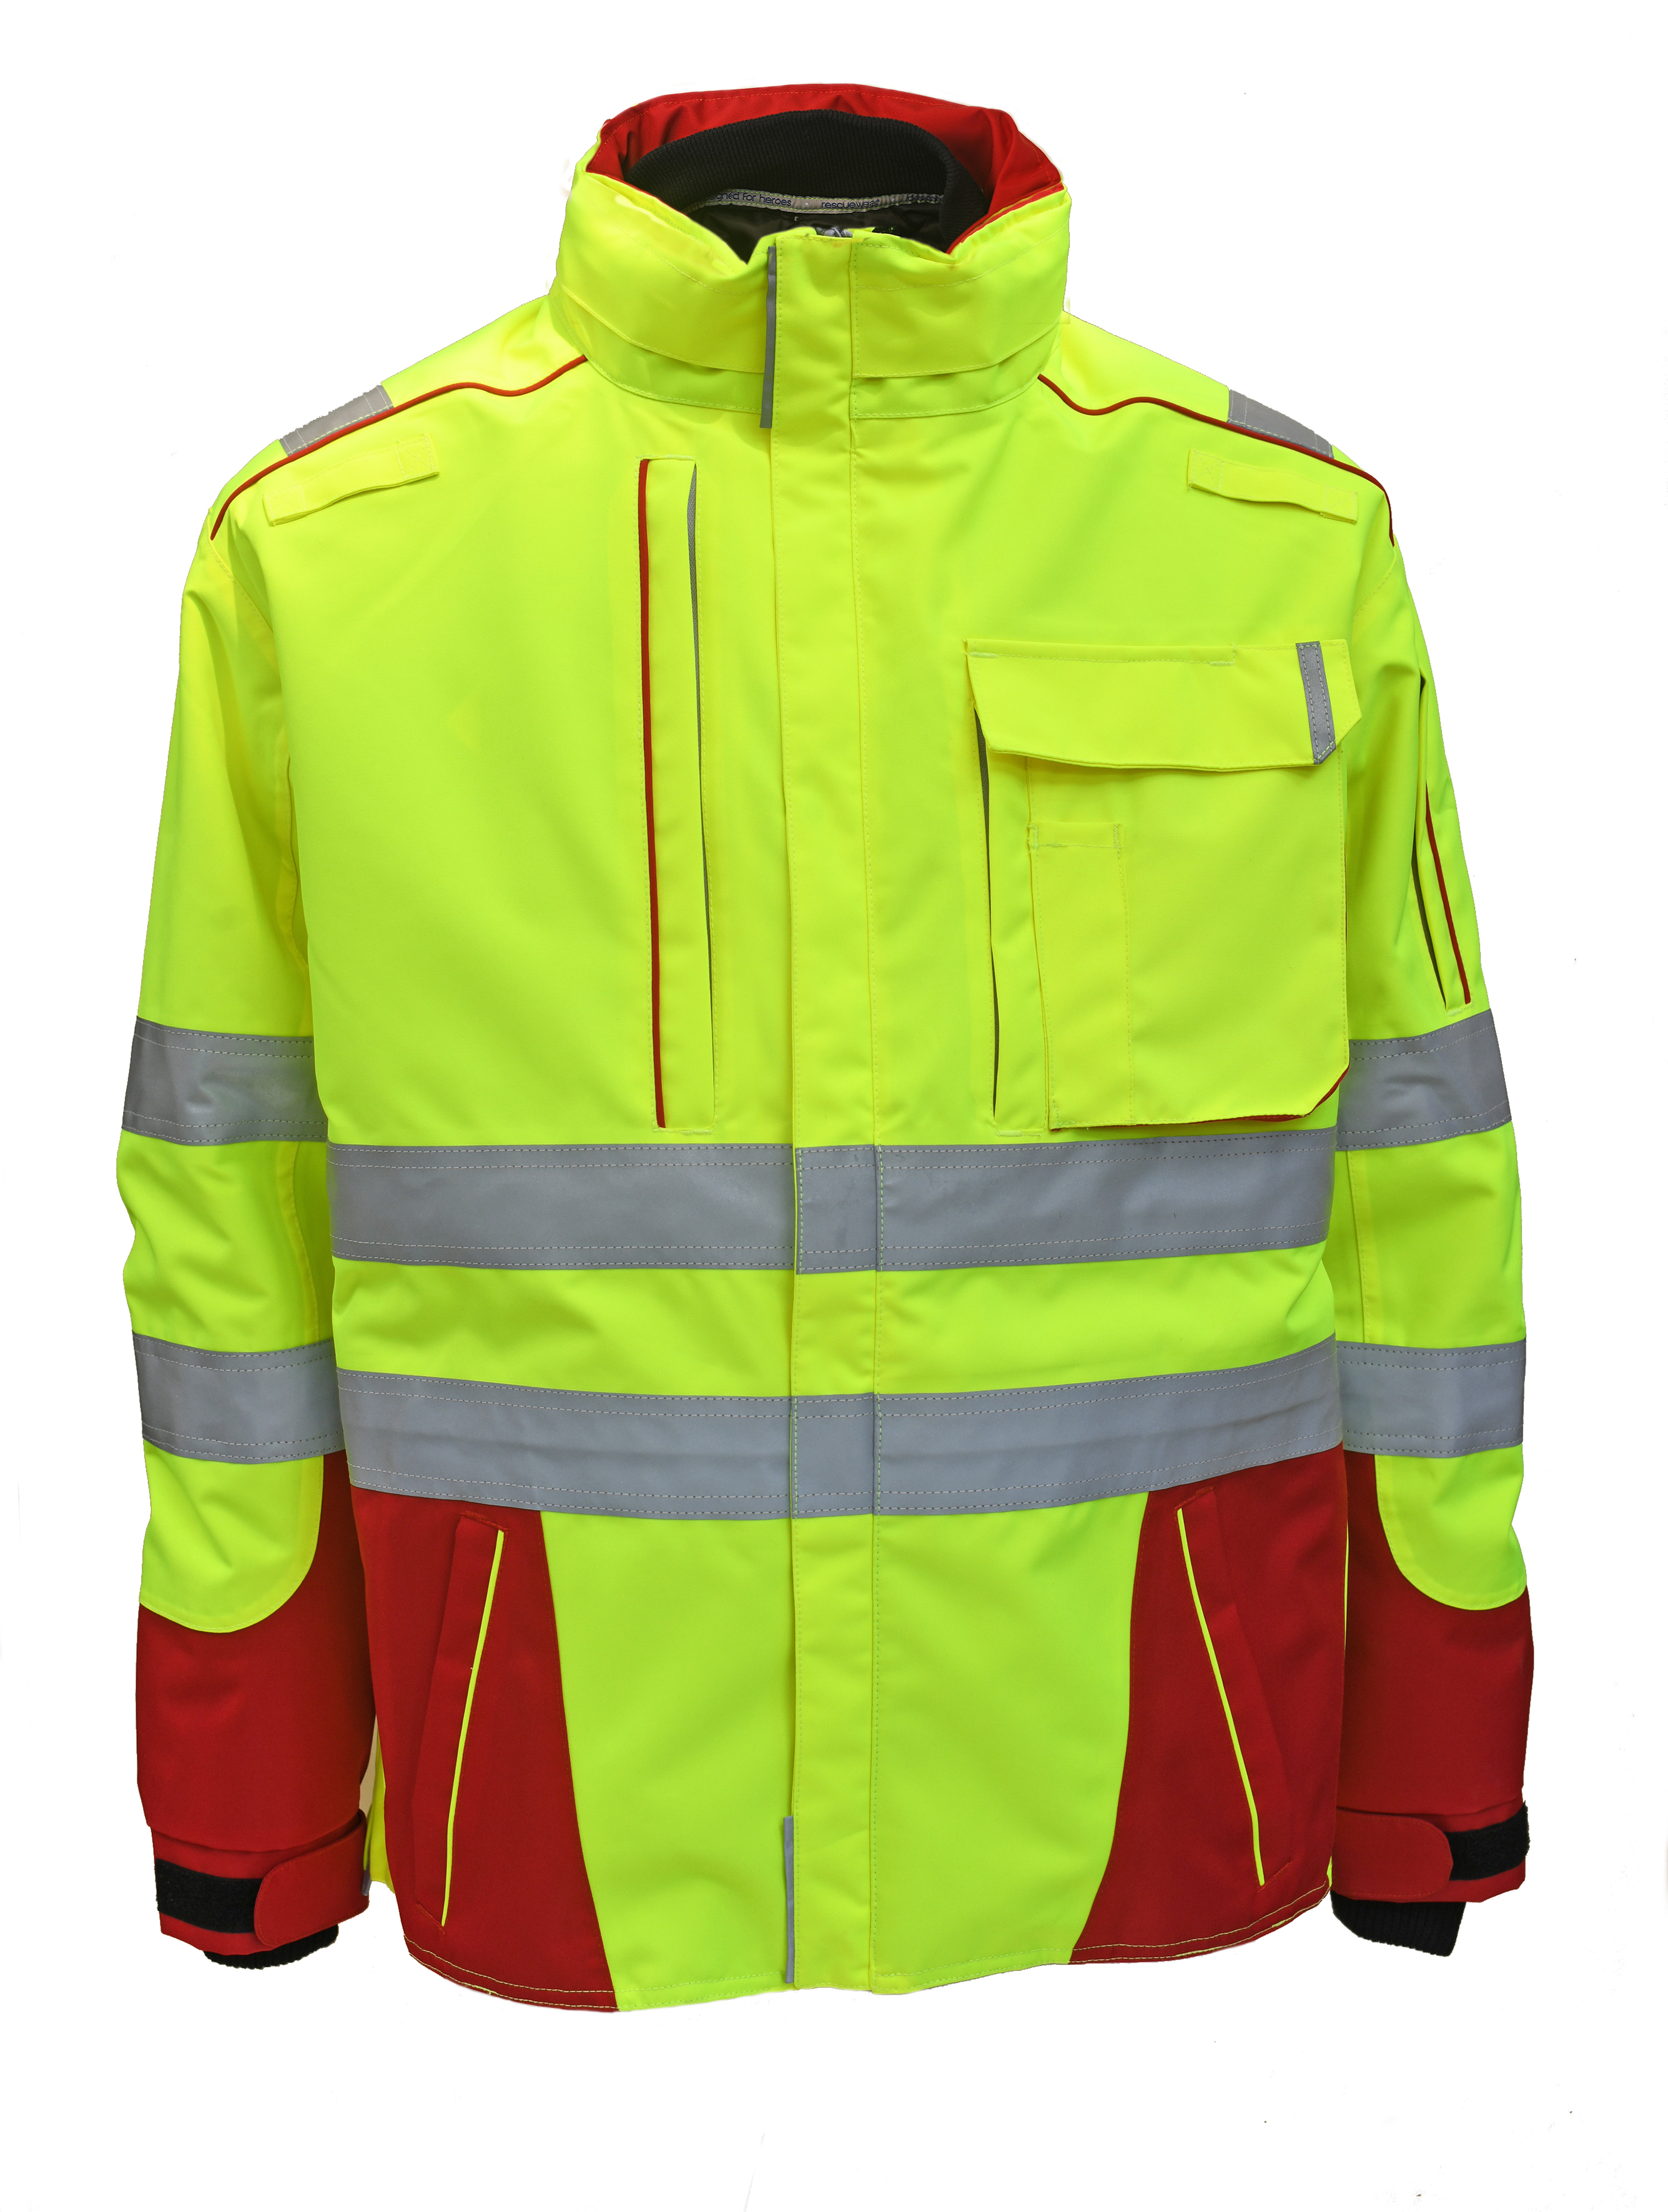 Rescuewear Midi-Parker 33858 Dynamic HiVis Klasse 3 Rot / Neon Gelb `W-Linie`